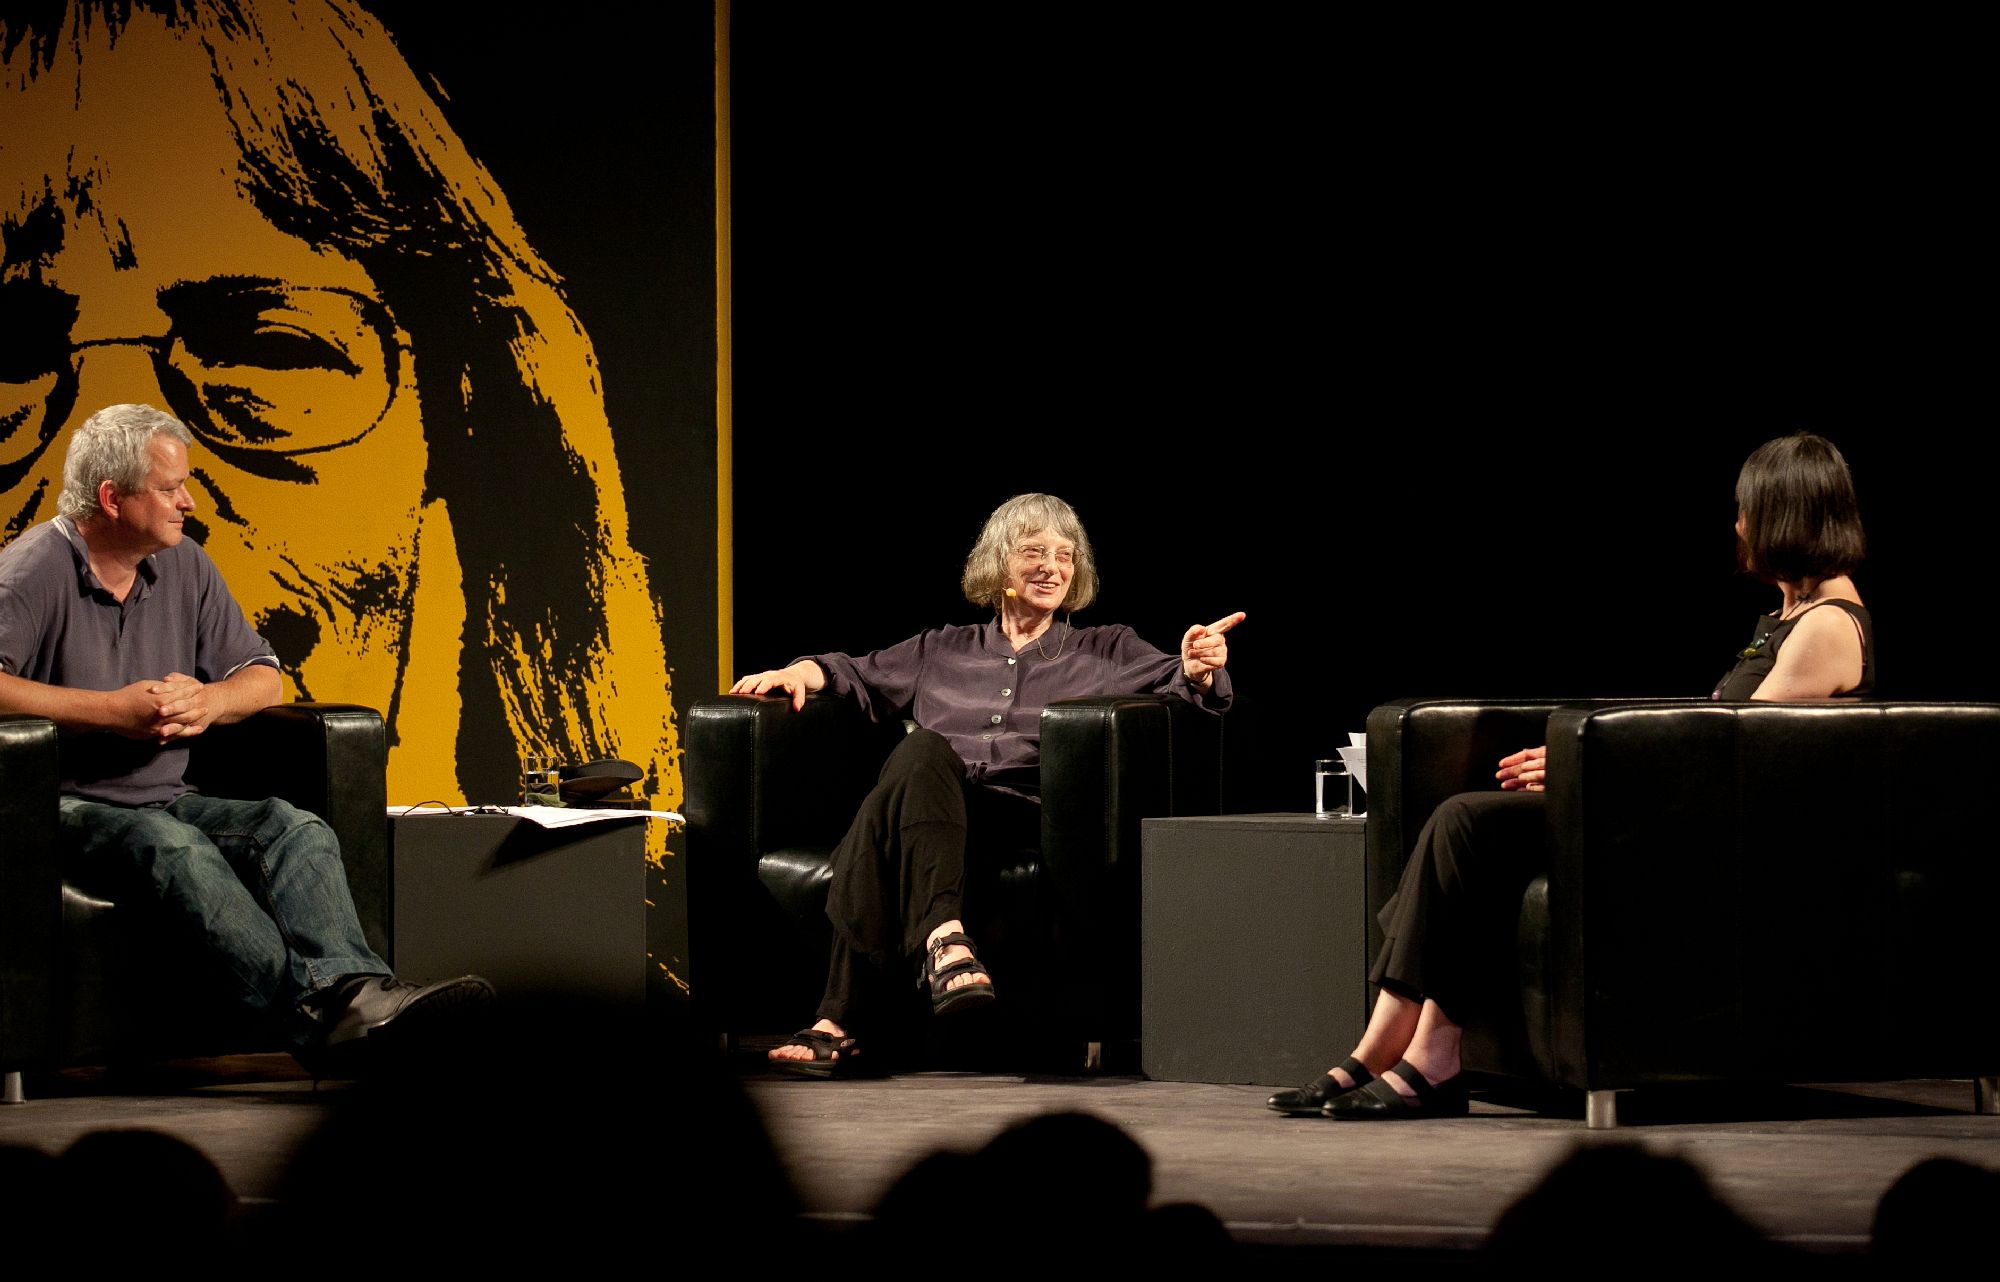 Ulf Stolterfoht, Elke Erb und Ilma Rakusa sitzen in Sesseln und sind im Gespräch